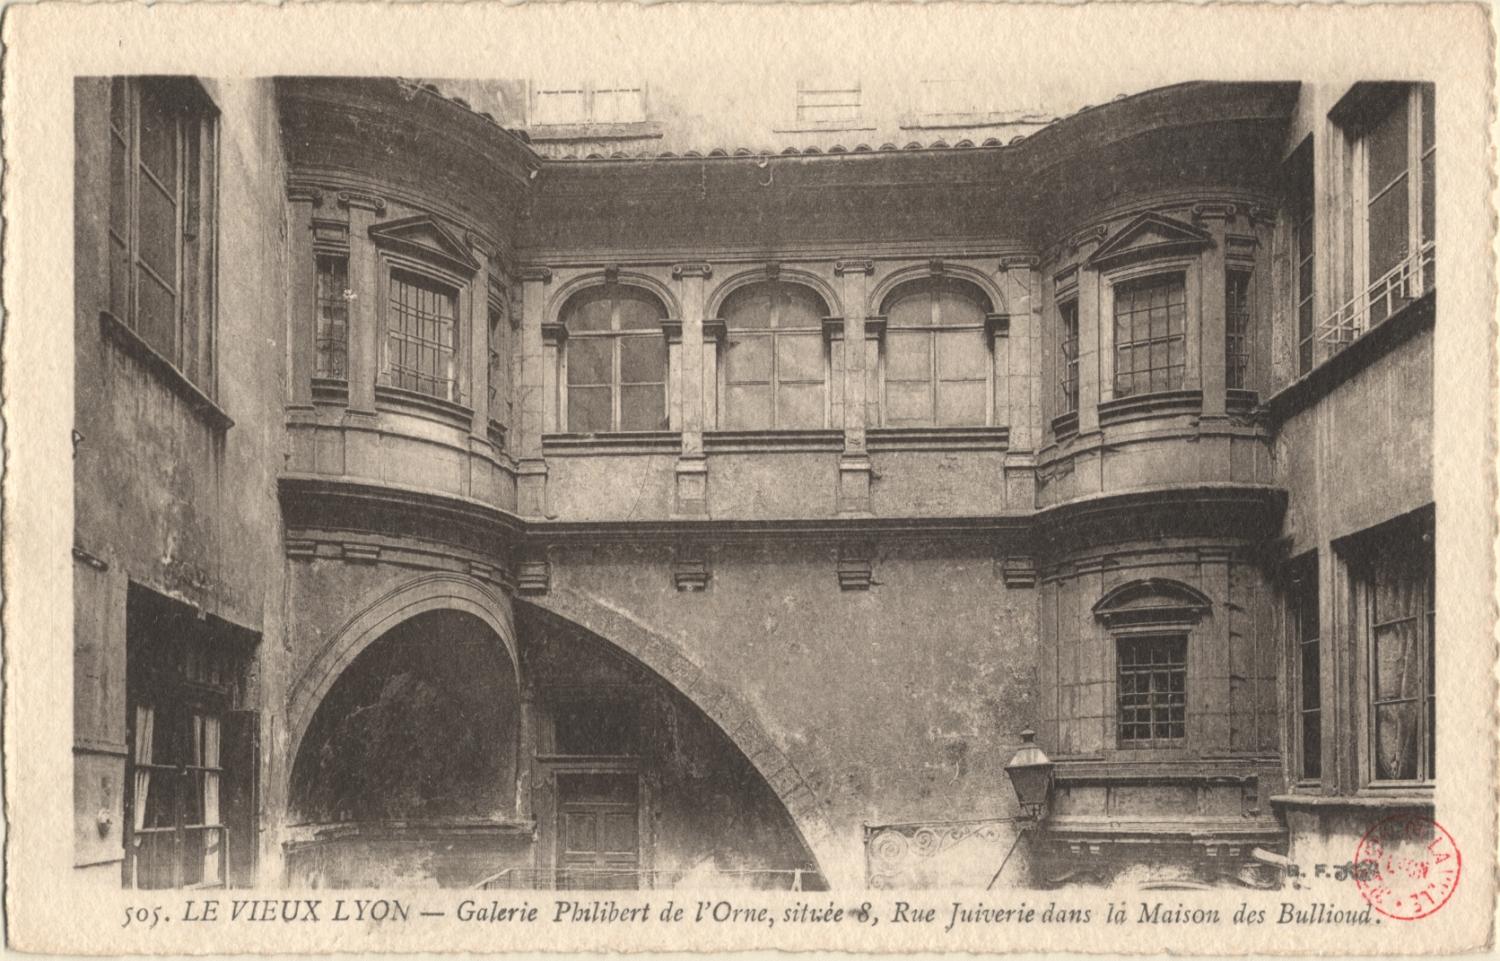 Le Vieux Lyon : Galerie Philibert de l'Orne ; située 8, Rue Juiverie dans la Maison des Bullioud